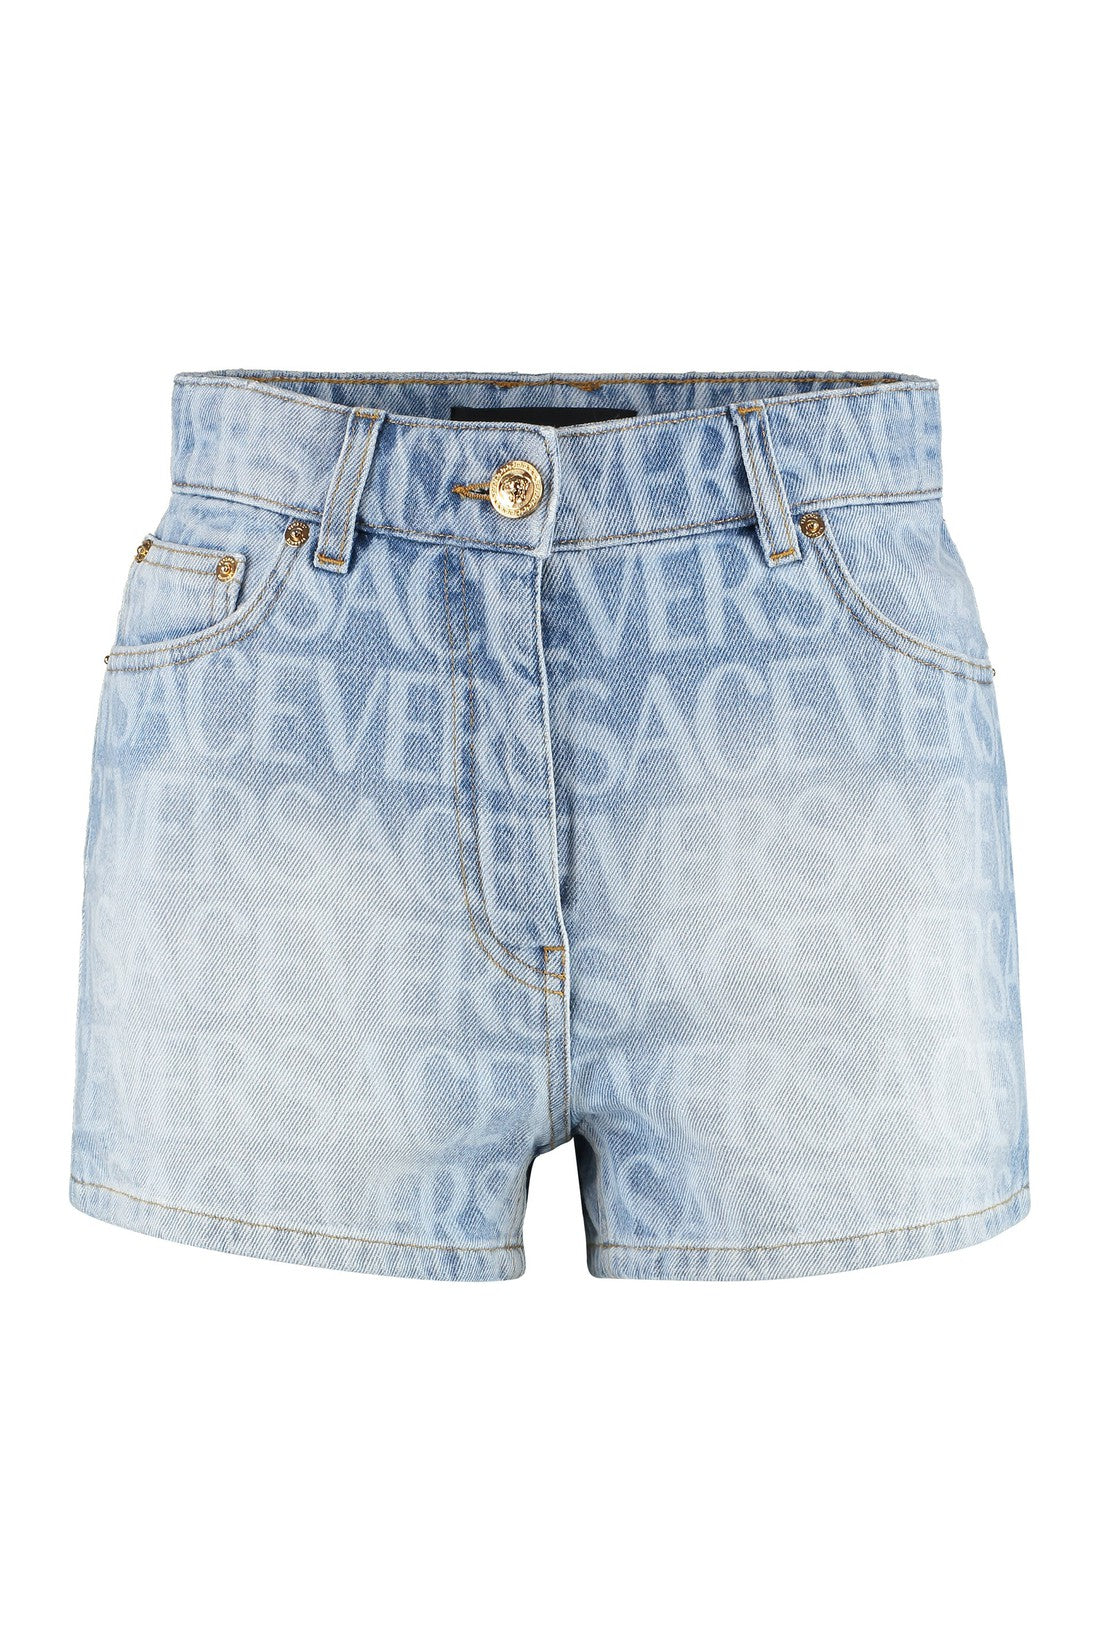 Versace-OUTLET-SALE-Denim shorts-ARCHIVIST